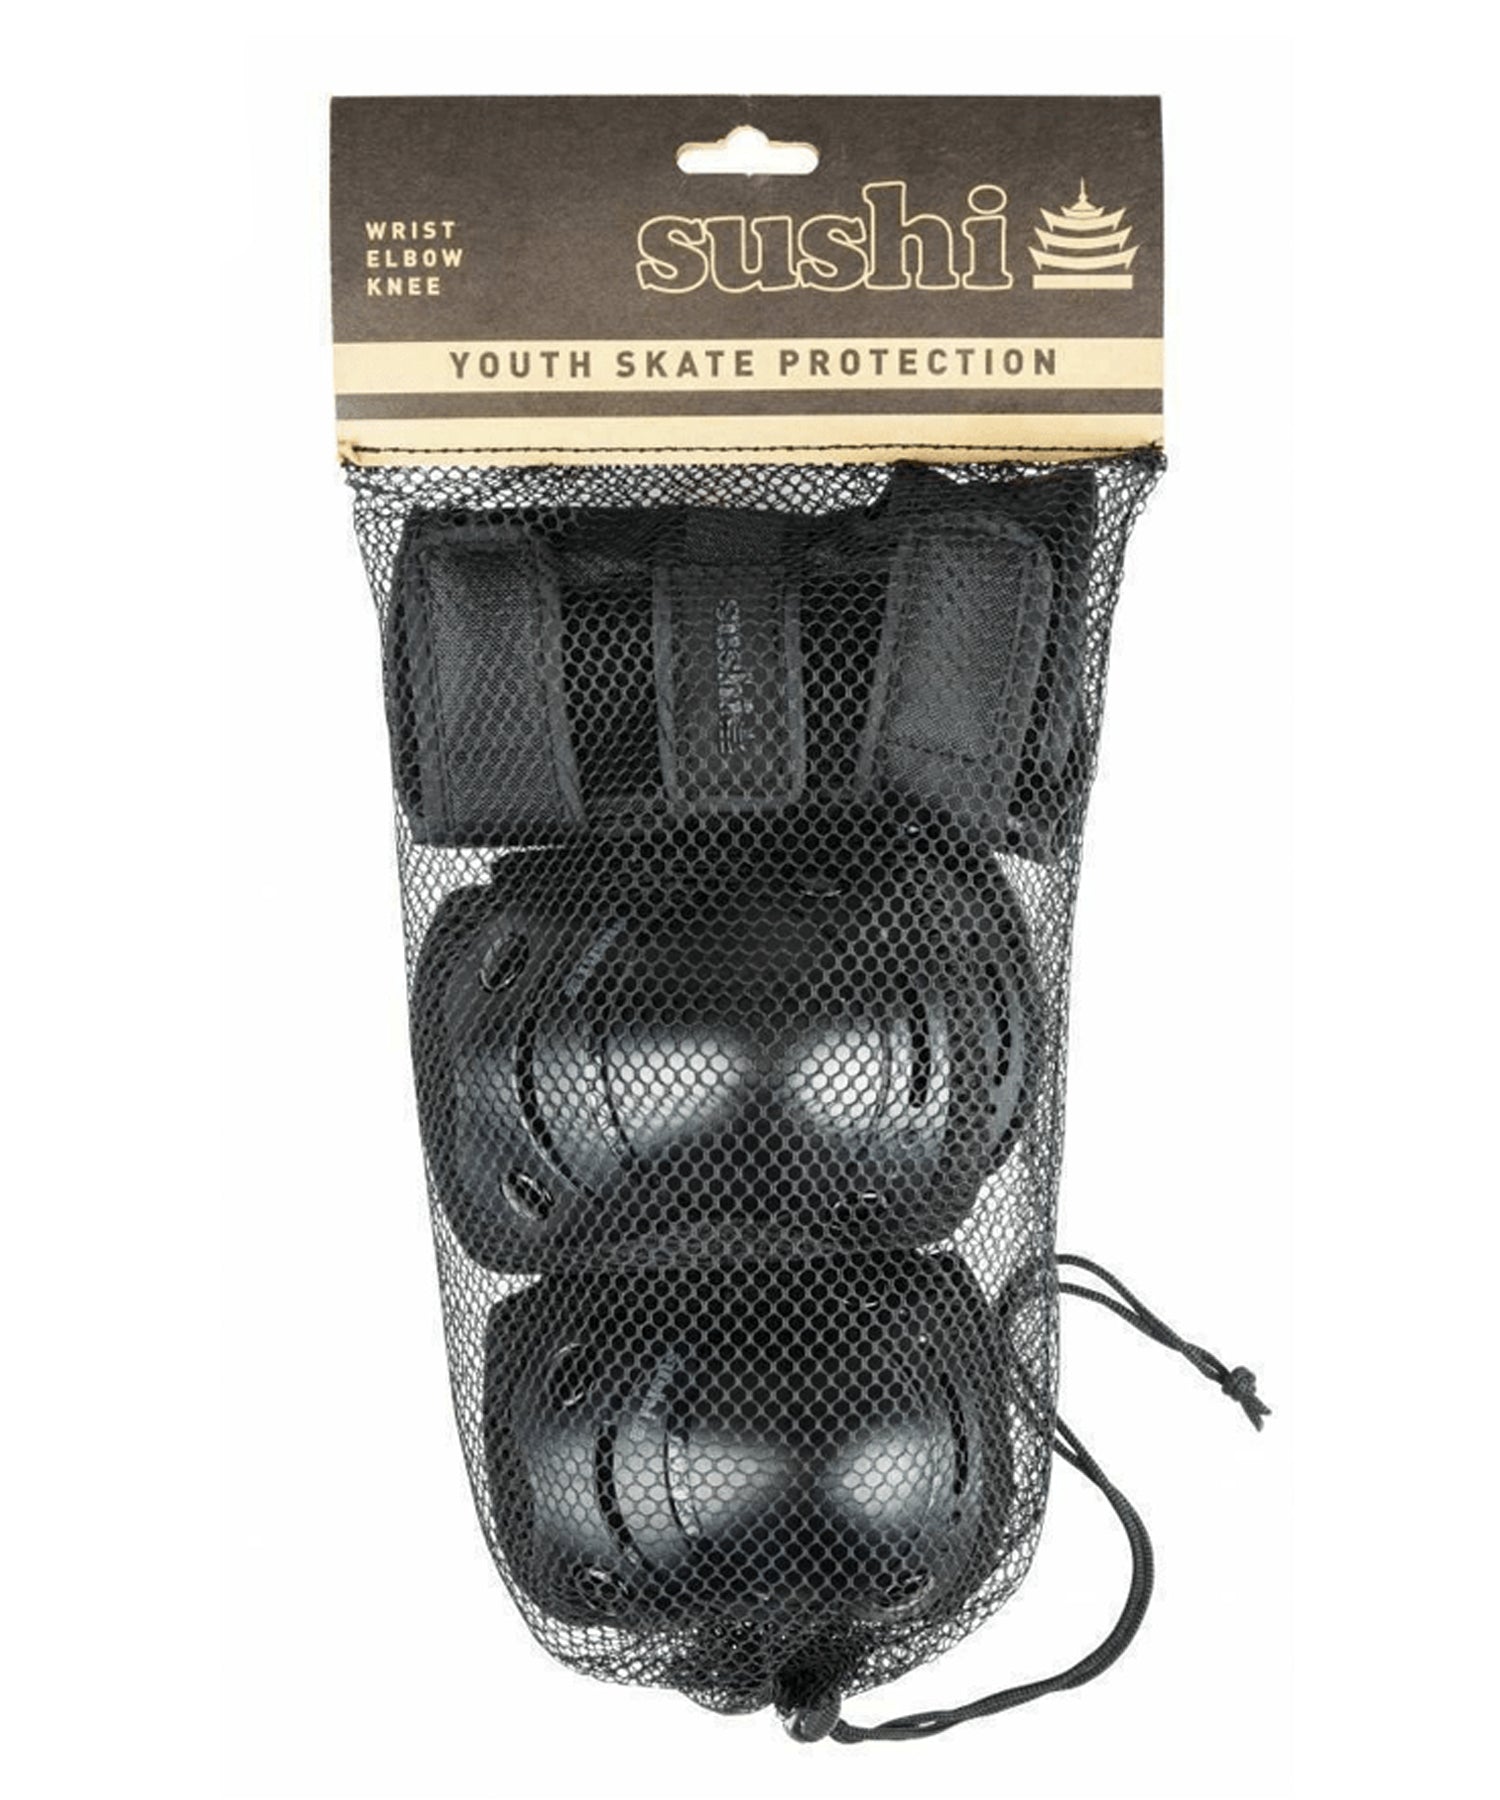 sushi-3-pack-pad set-youth negro-Protecciones para niño de rodillas, codo y muñeca-color negro-Diseño ergonómico y cómodo de llevar.